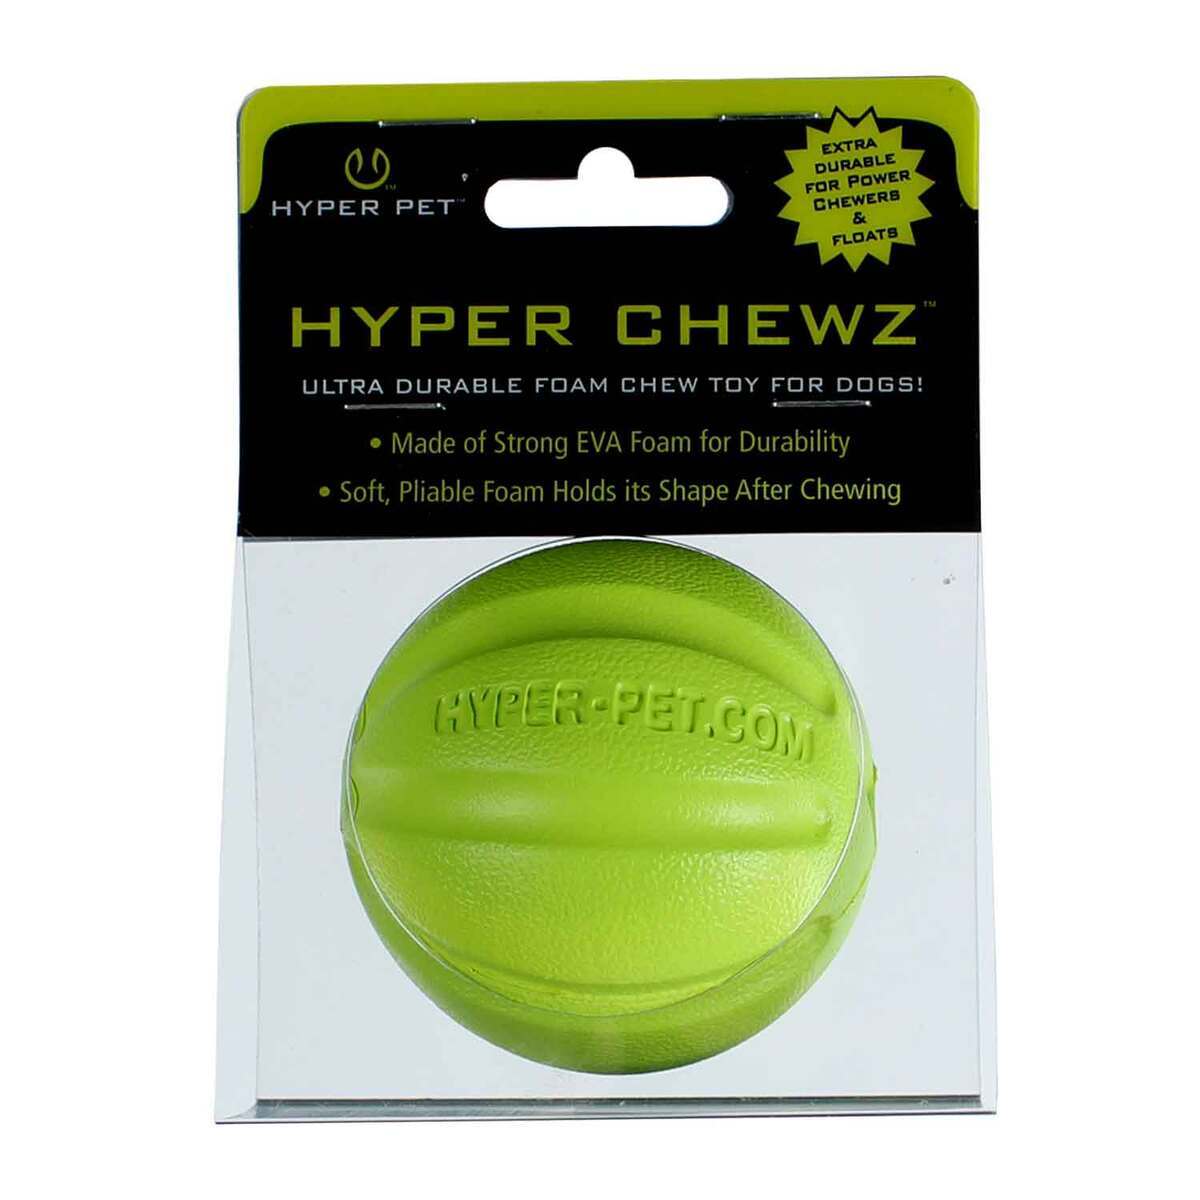 https://www.sportsmans.com/medias/hyper-pet-chewz-eva-foam-retrieving-ball-dog-toy-green-1543348-1.jpg?context=bWFzdGVyfGltYWdlc3w2NjQwOHxpbWFnZS9qcGVnfGhmYy9oZmEvMTExODgzODMyMTk3NDIvMTU0MzM0OC0xX2Jhc2UtY29udmVyc2lvbkZvcm1hdF8xMjAwLWNvbnZlcnNpb25Gb3JtYXR8MjdkMmFmY2I0NTliY2Q0NTAxZjhjZjQ0NDJkMzQxYWMxYWI0ODE1YTUzYjdjNTRhYWU4MTE5NTE0MmYxMGJjYg